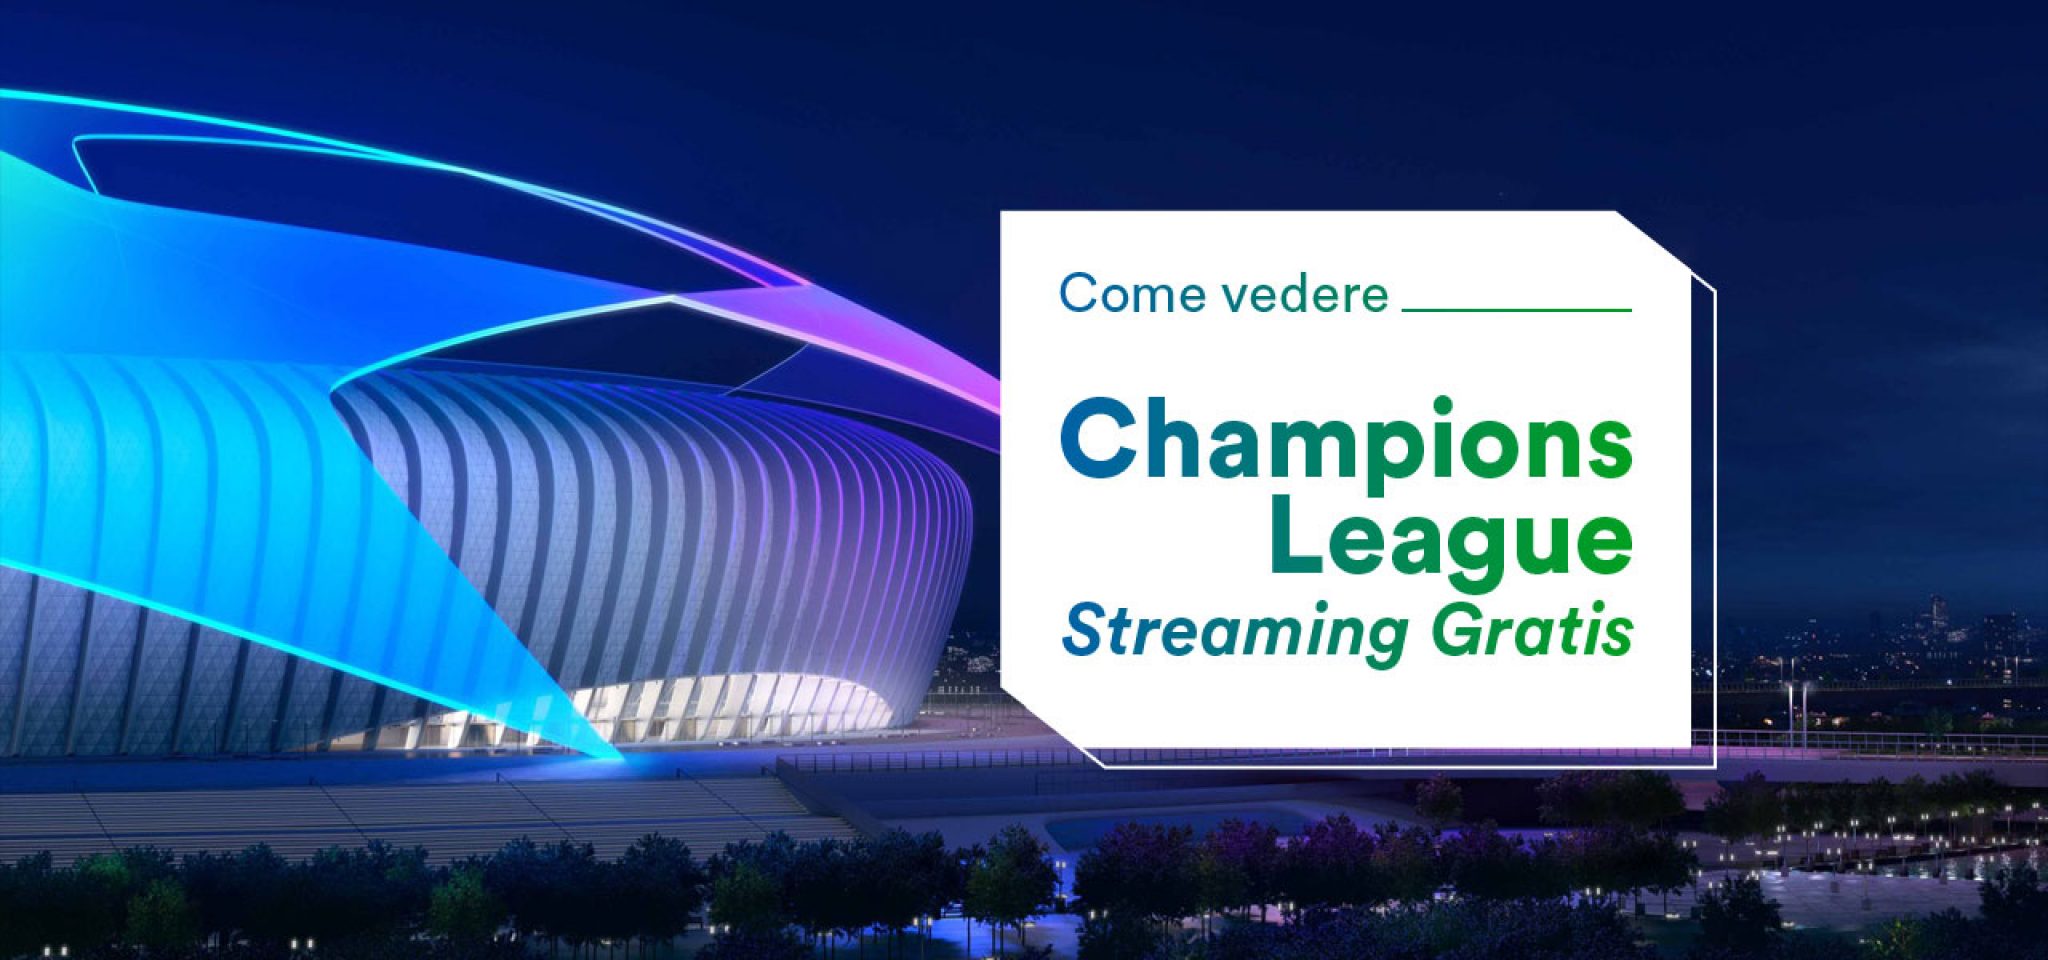 Champions League Streaming Gratis Come vedere le partite con VPN